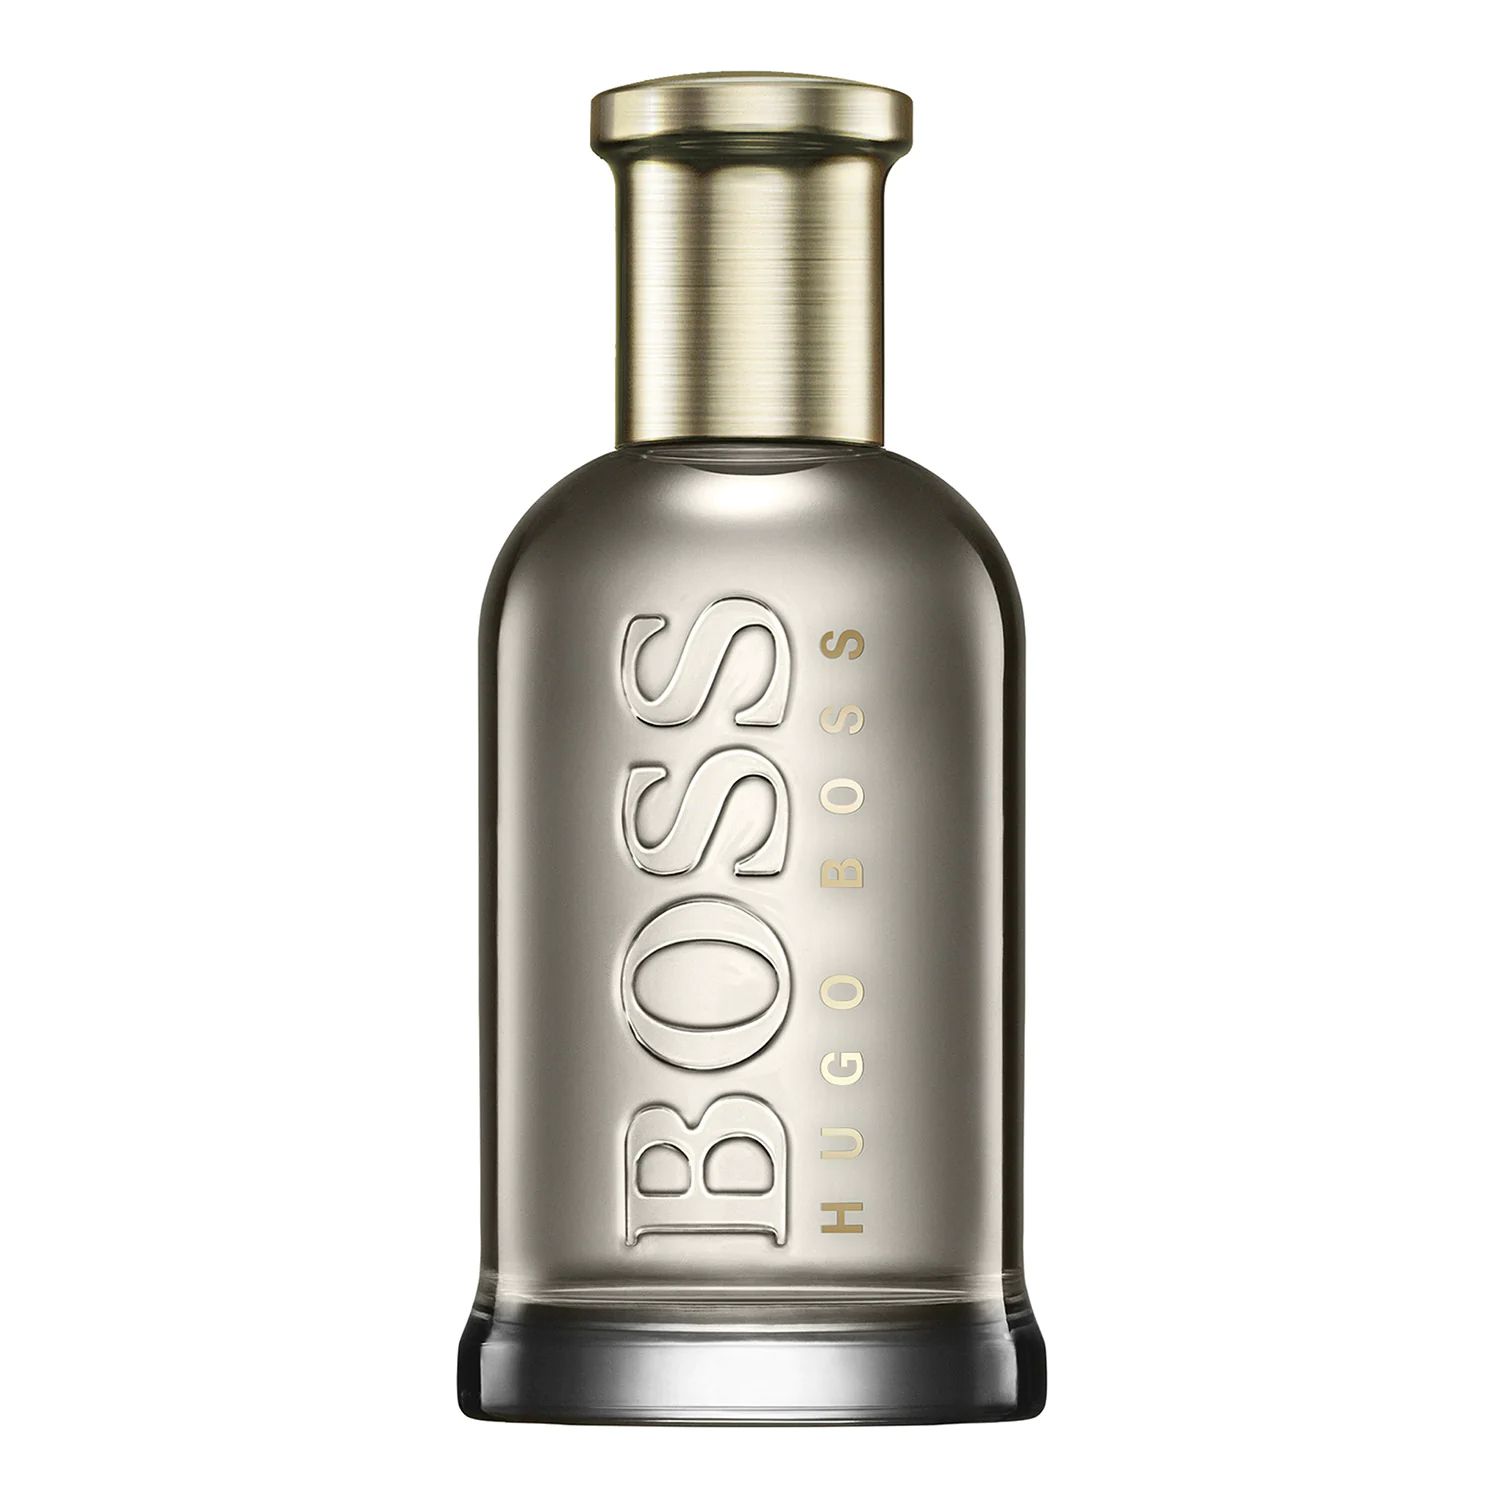 Boss Bottled Eau de Parfum Hugo Boss cologne - a new fragrance for men 2020